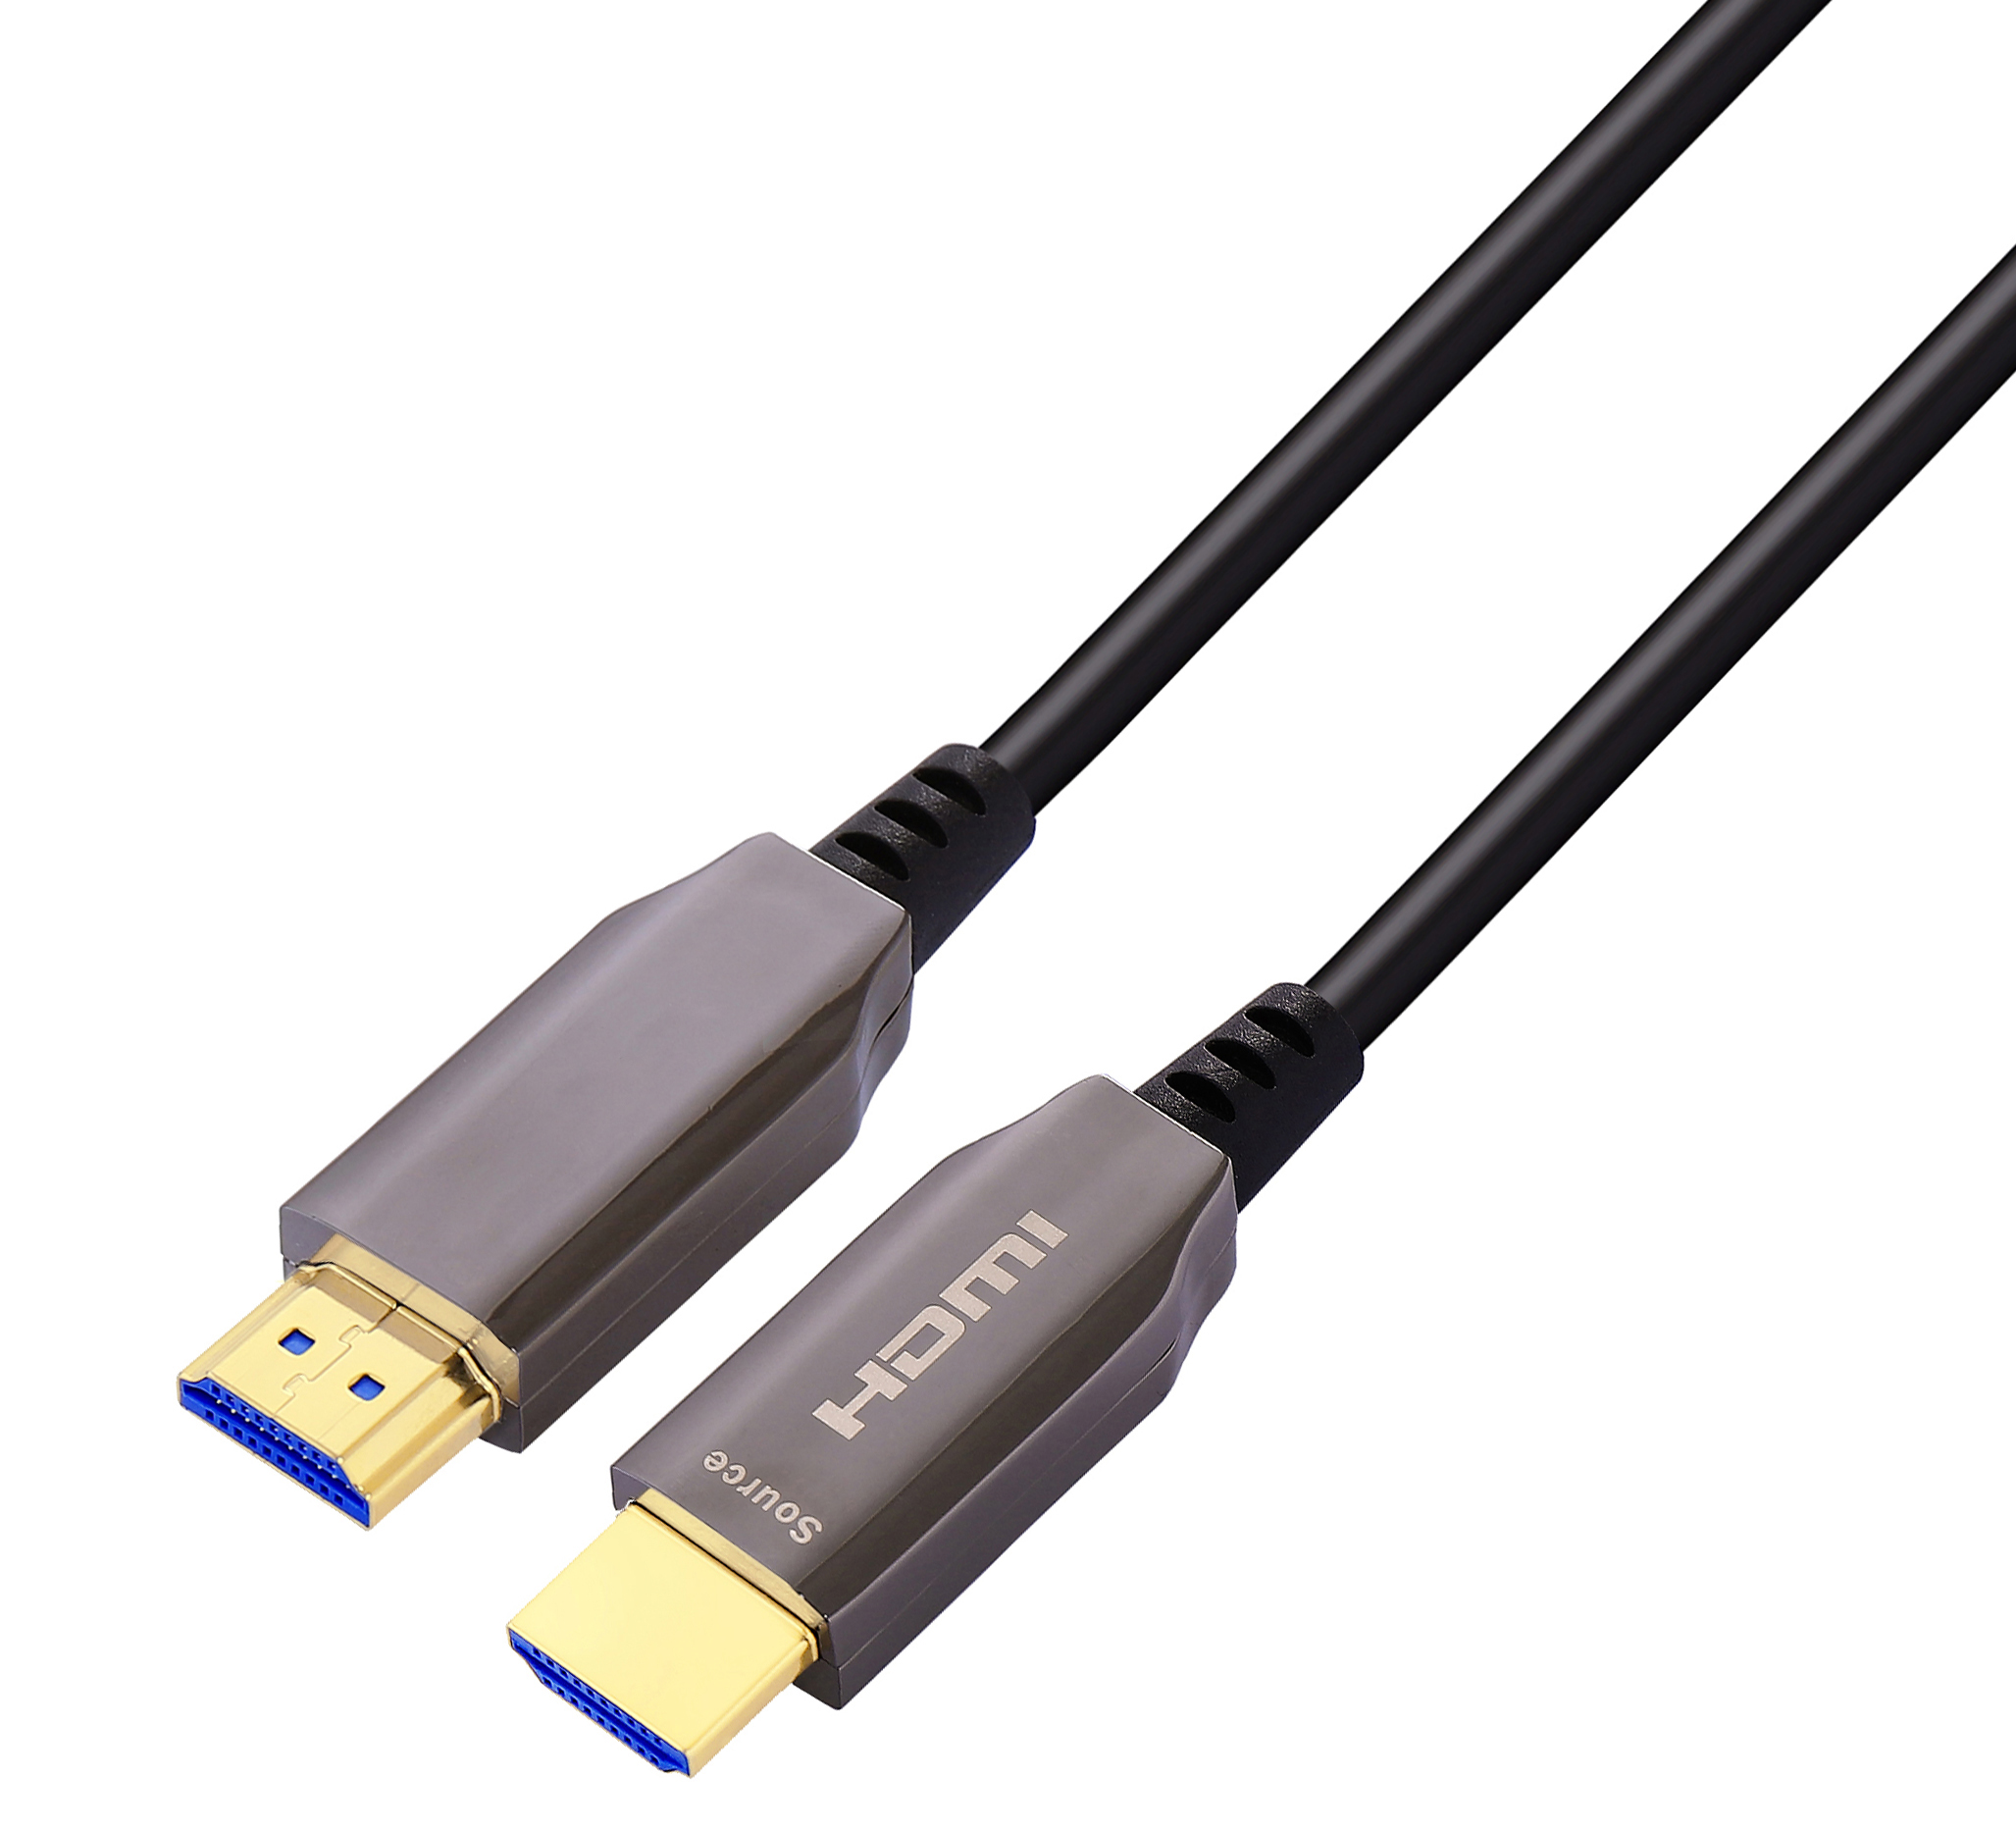 HDMI Cable - HDMF006 Optical Fiber